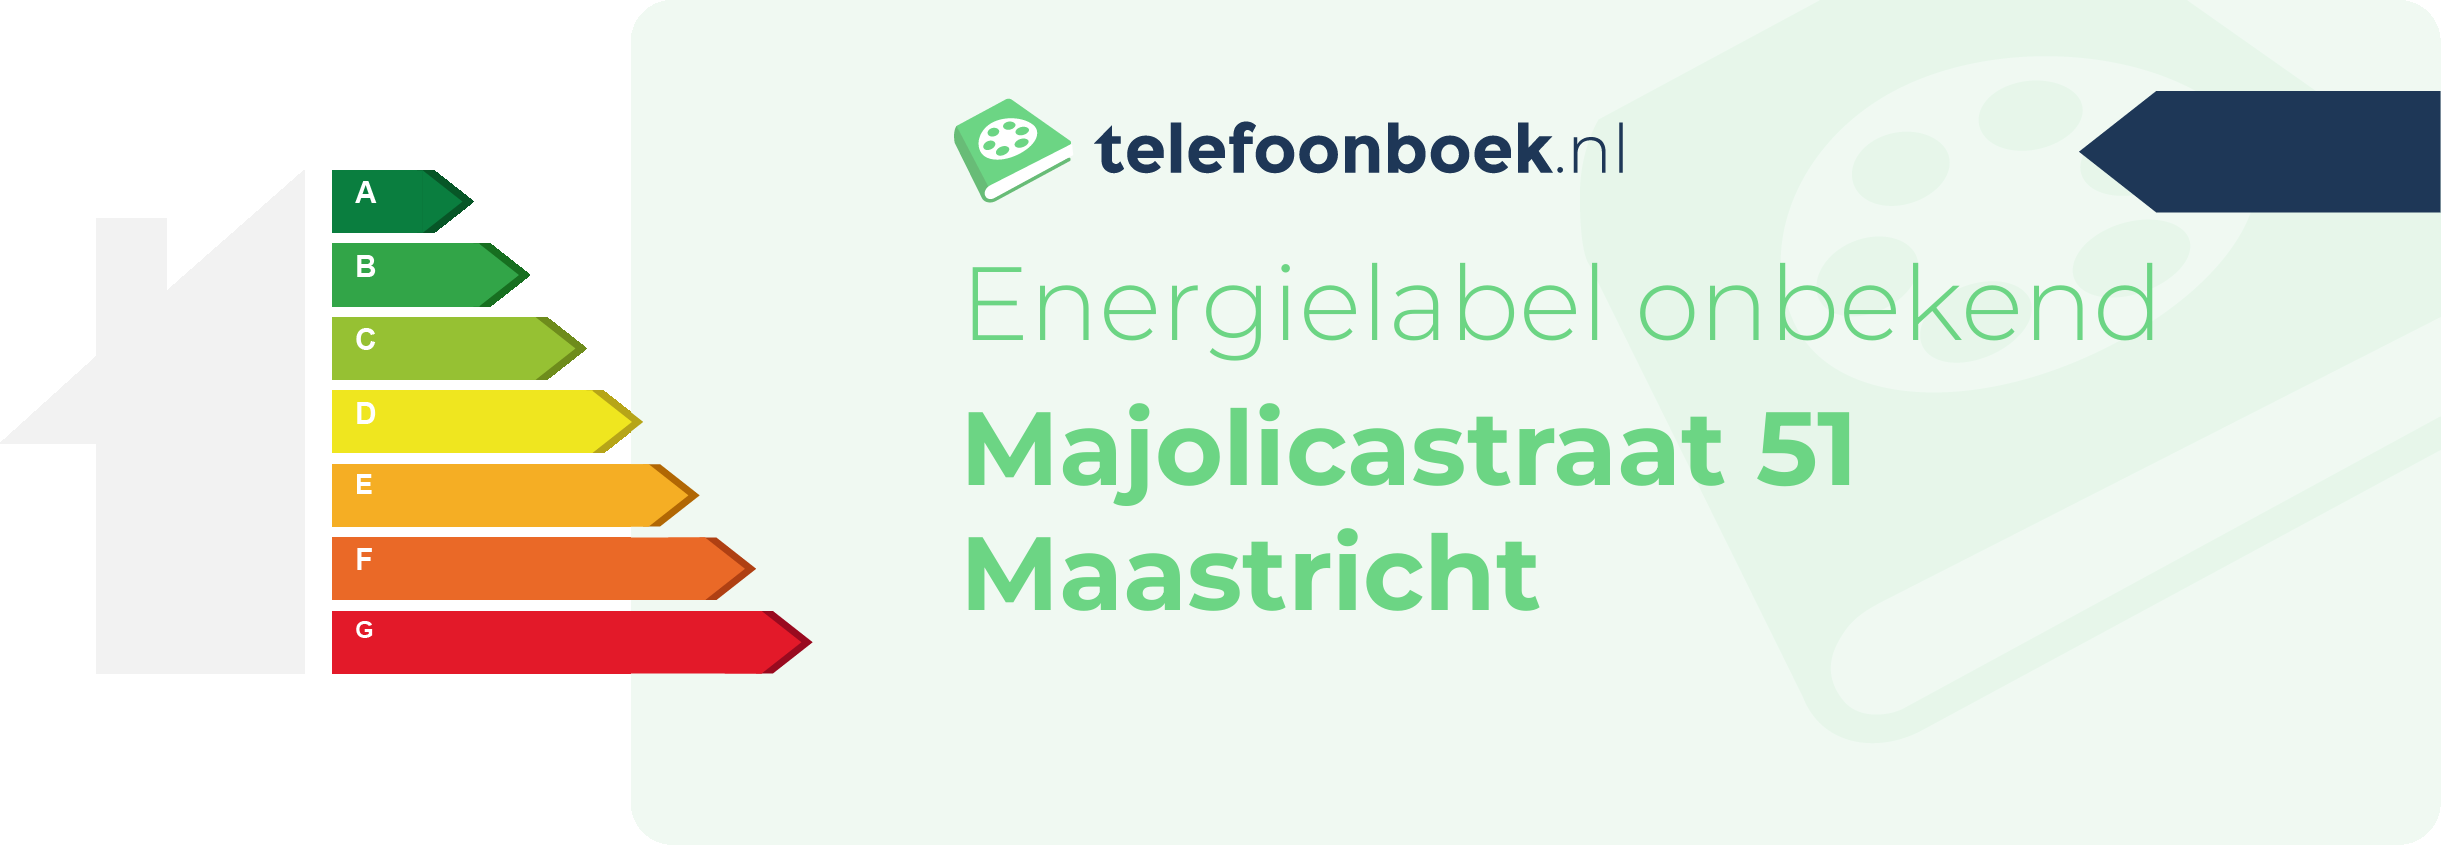 Energielabel Majolicastraat 51 Maastricht